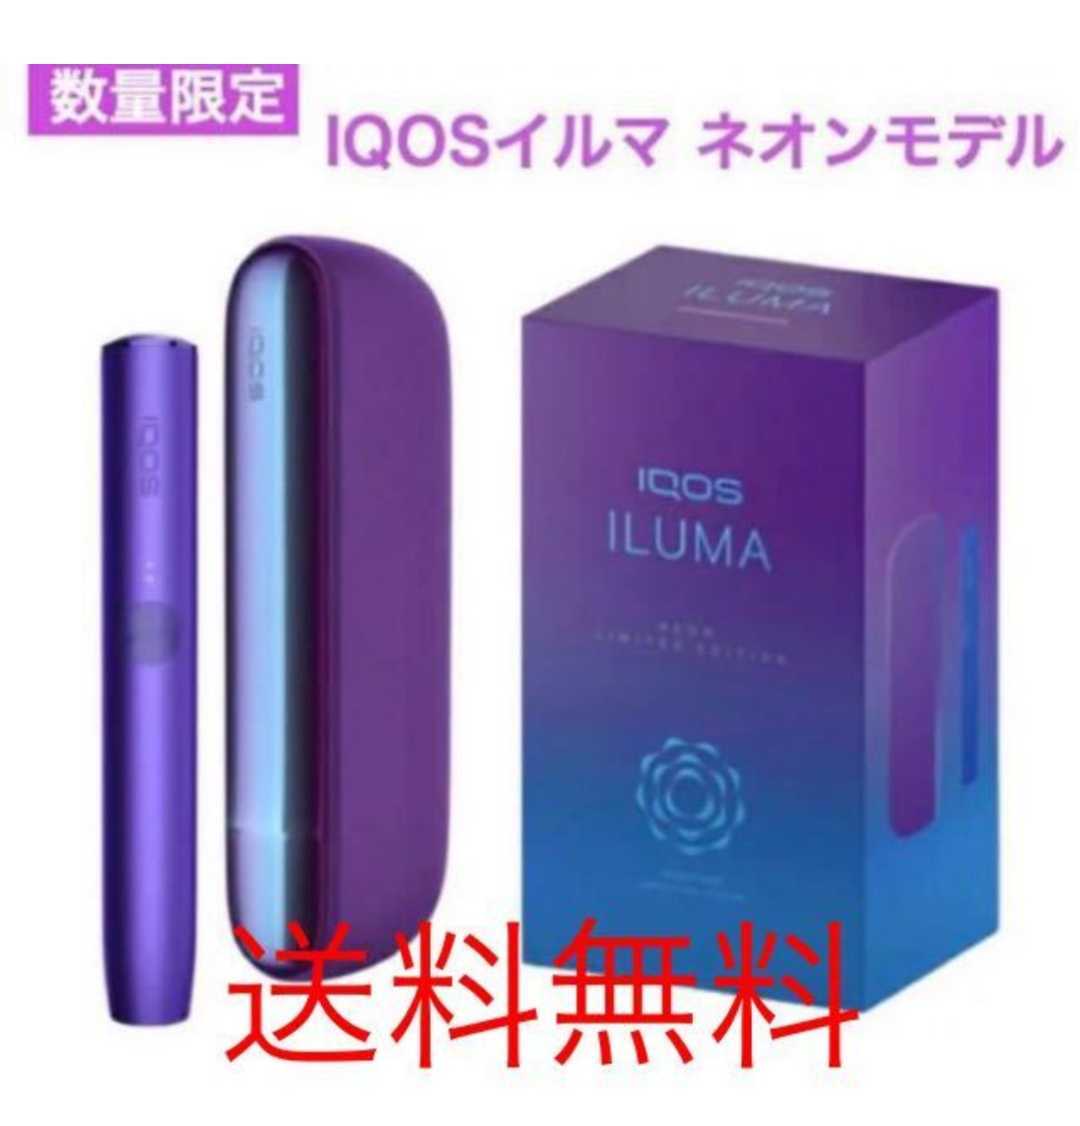 未登録 iQOS ILUMA NEON アイコス イルマ ネオン モデル 本体 セット 数量限定 最新型 ギフト プレゼント レア(喫煙グッズ